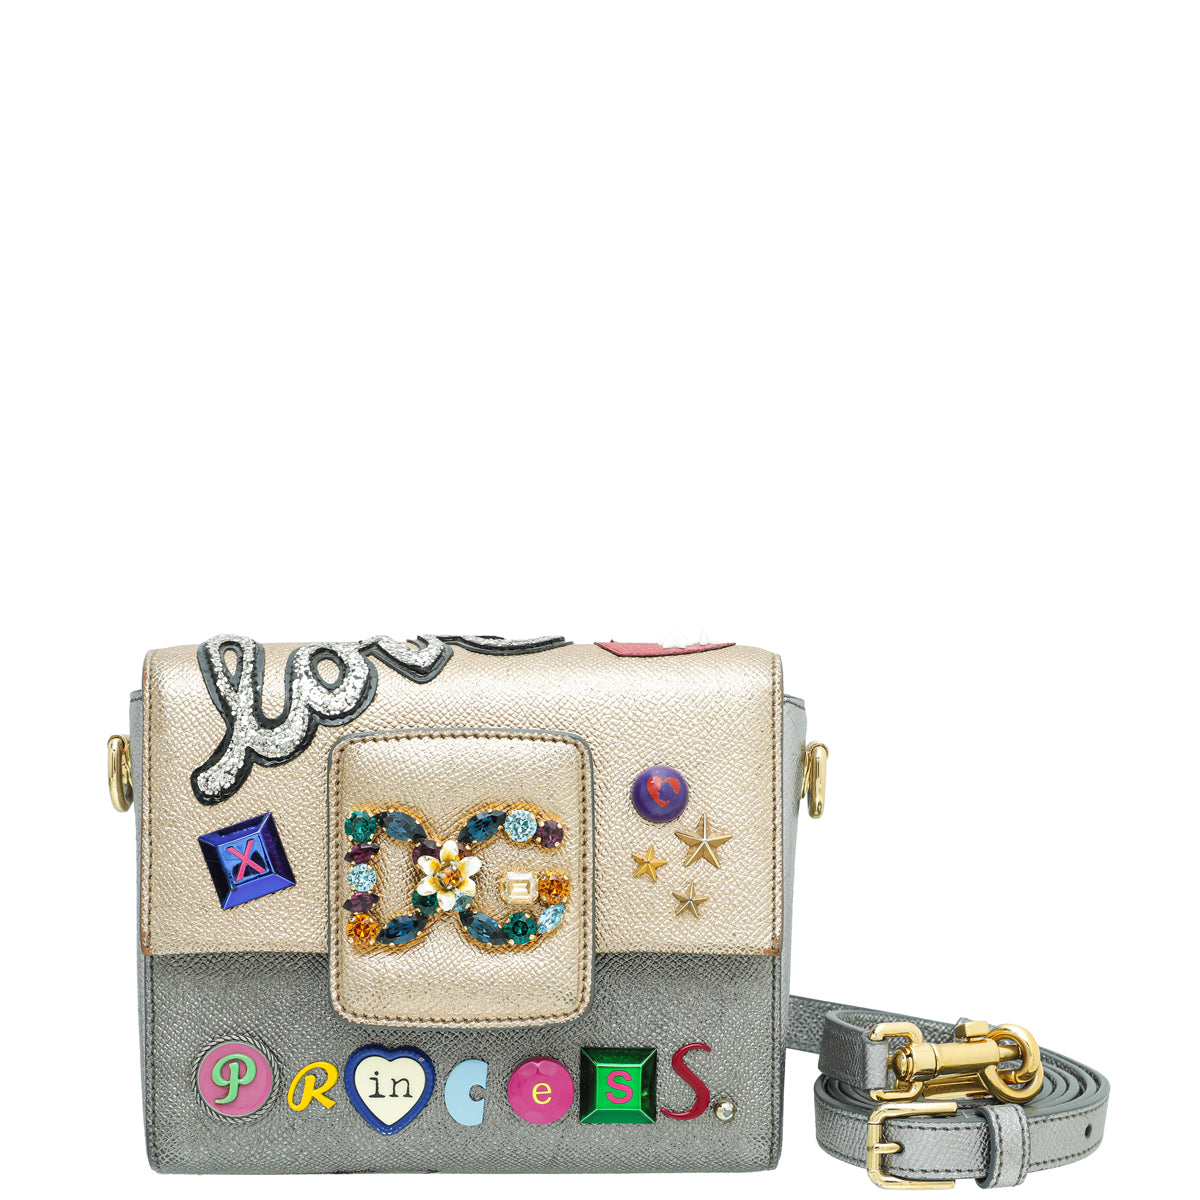 Dolce & Gabbana DG Millennials Love Princess Crossbody Bag – The Closet